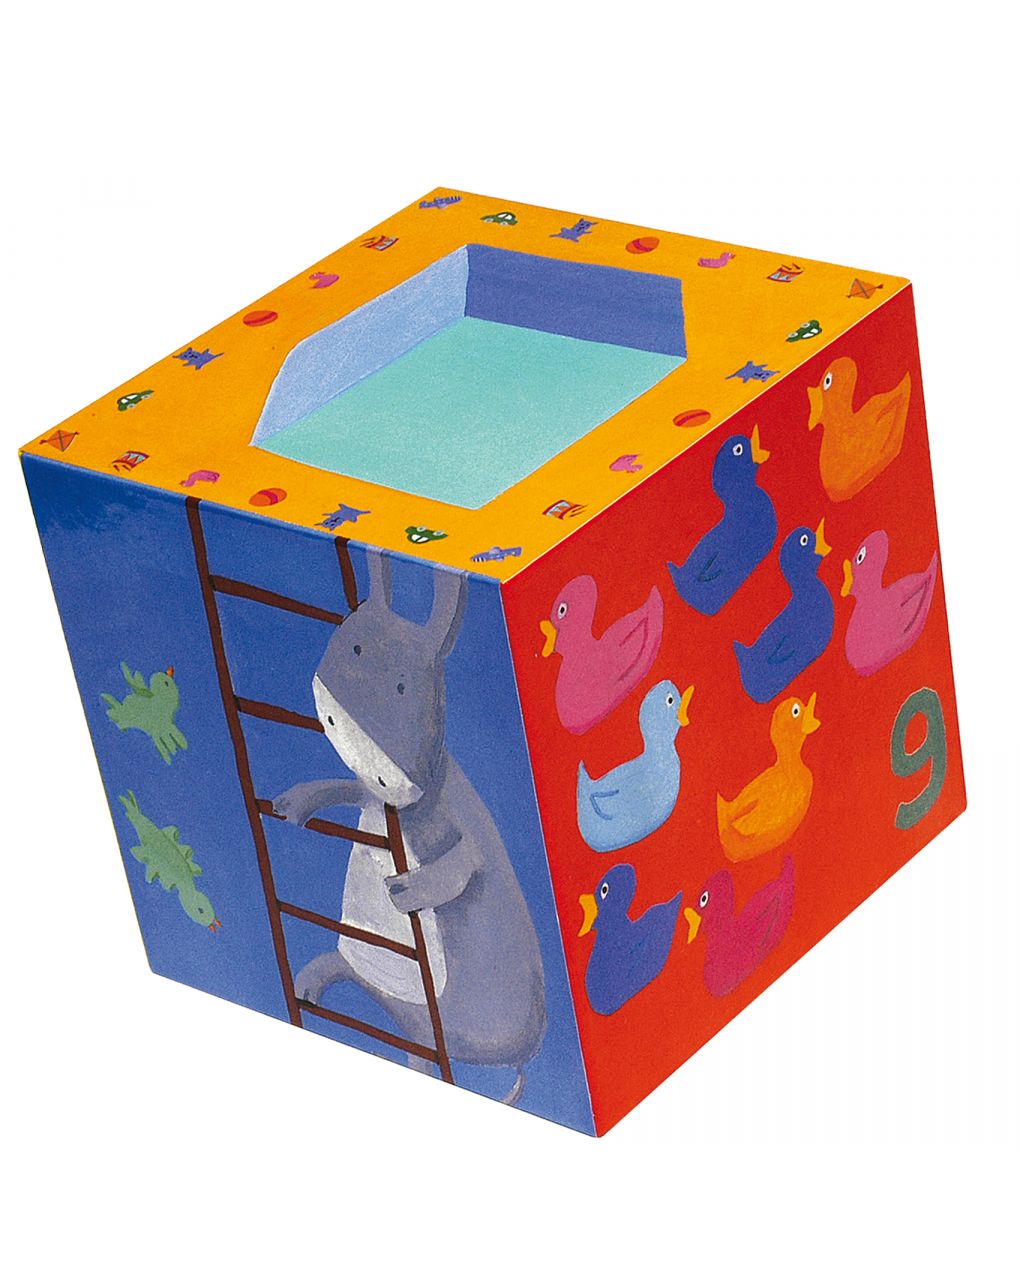 10 cubi sovrapponibili in cartone 'rigolo' - djeco - Djeco